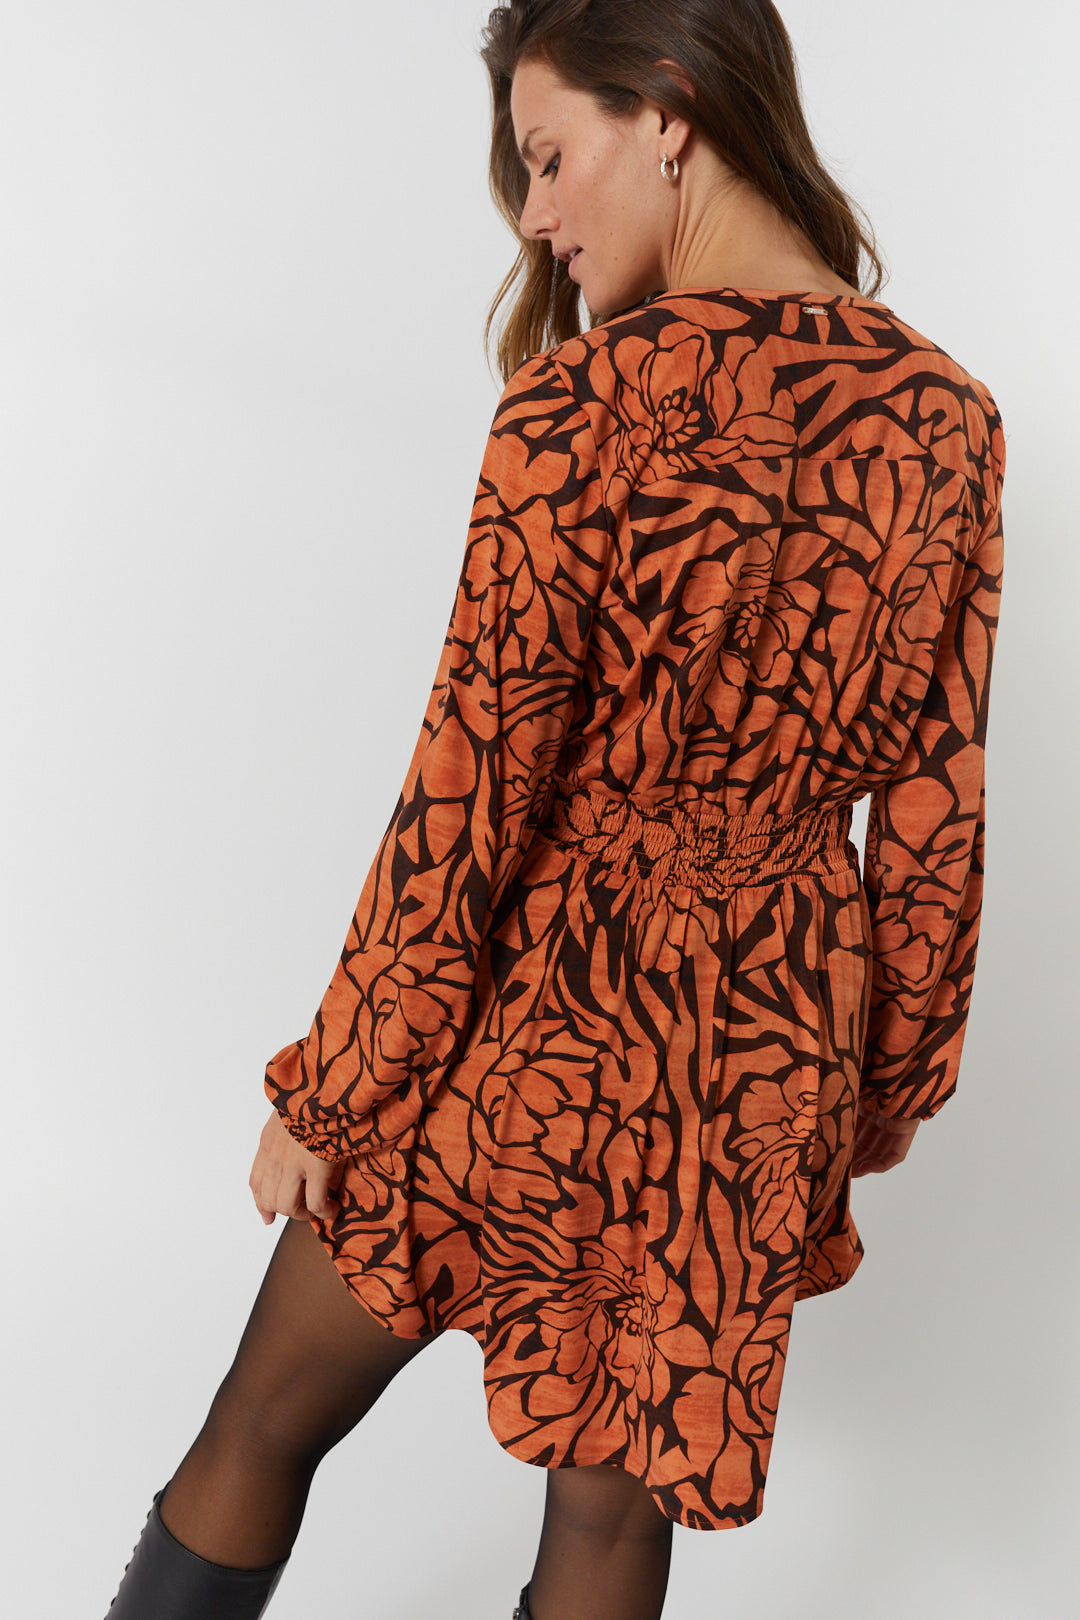 Orange floral patterned dress | Cassidy